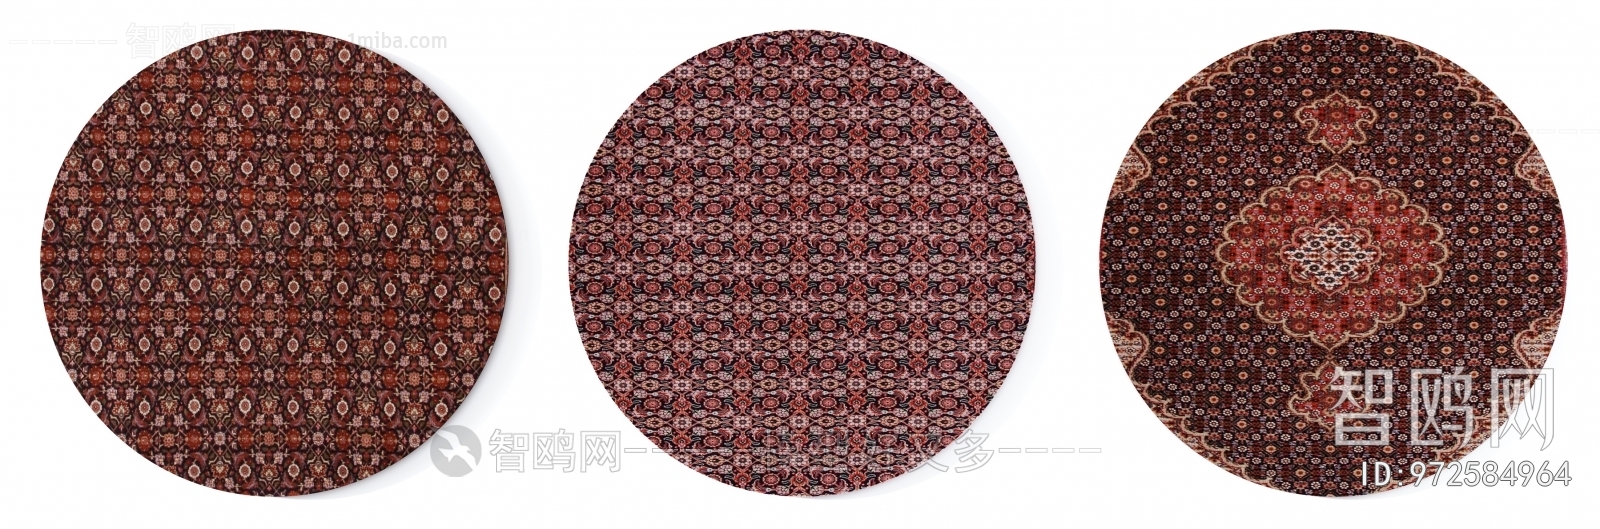 美式乡村深红色圆形地毯